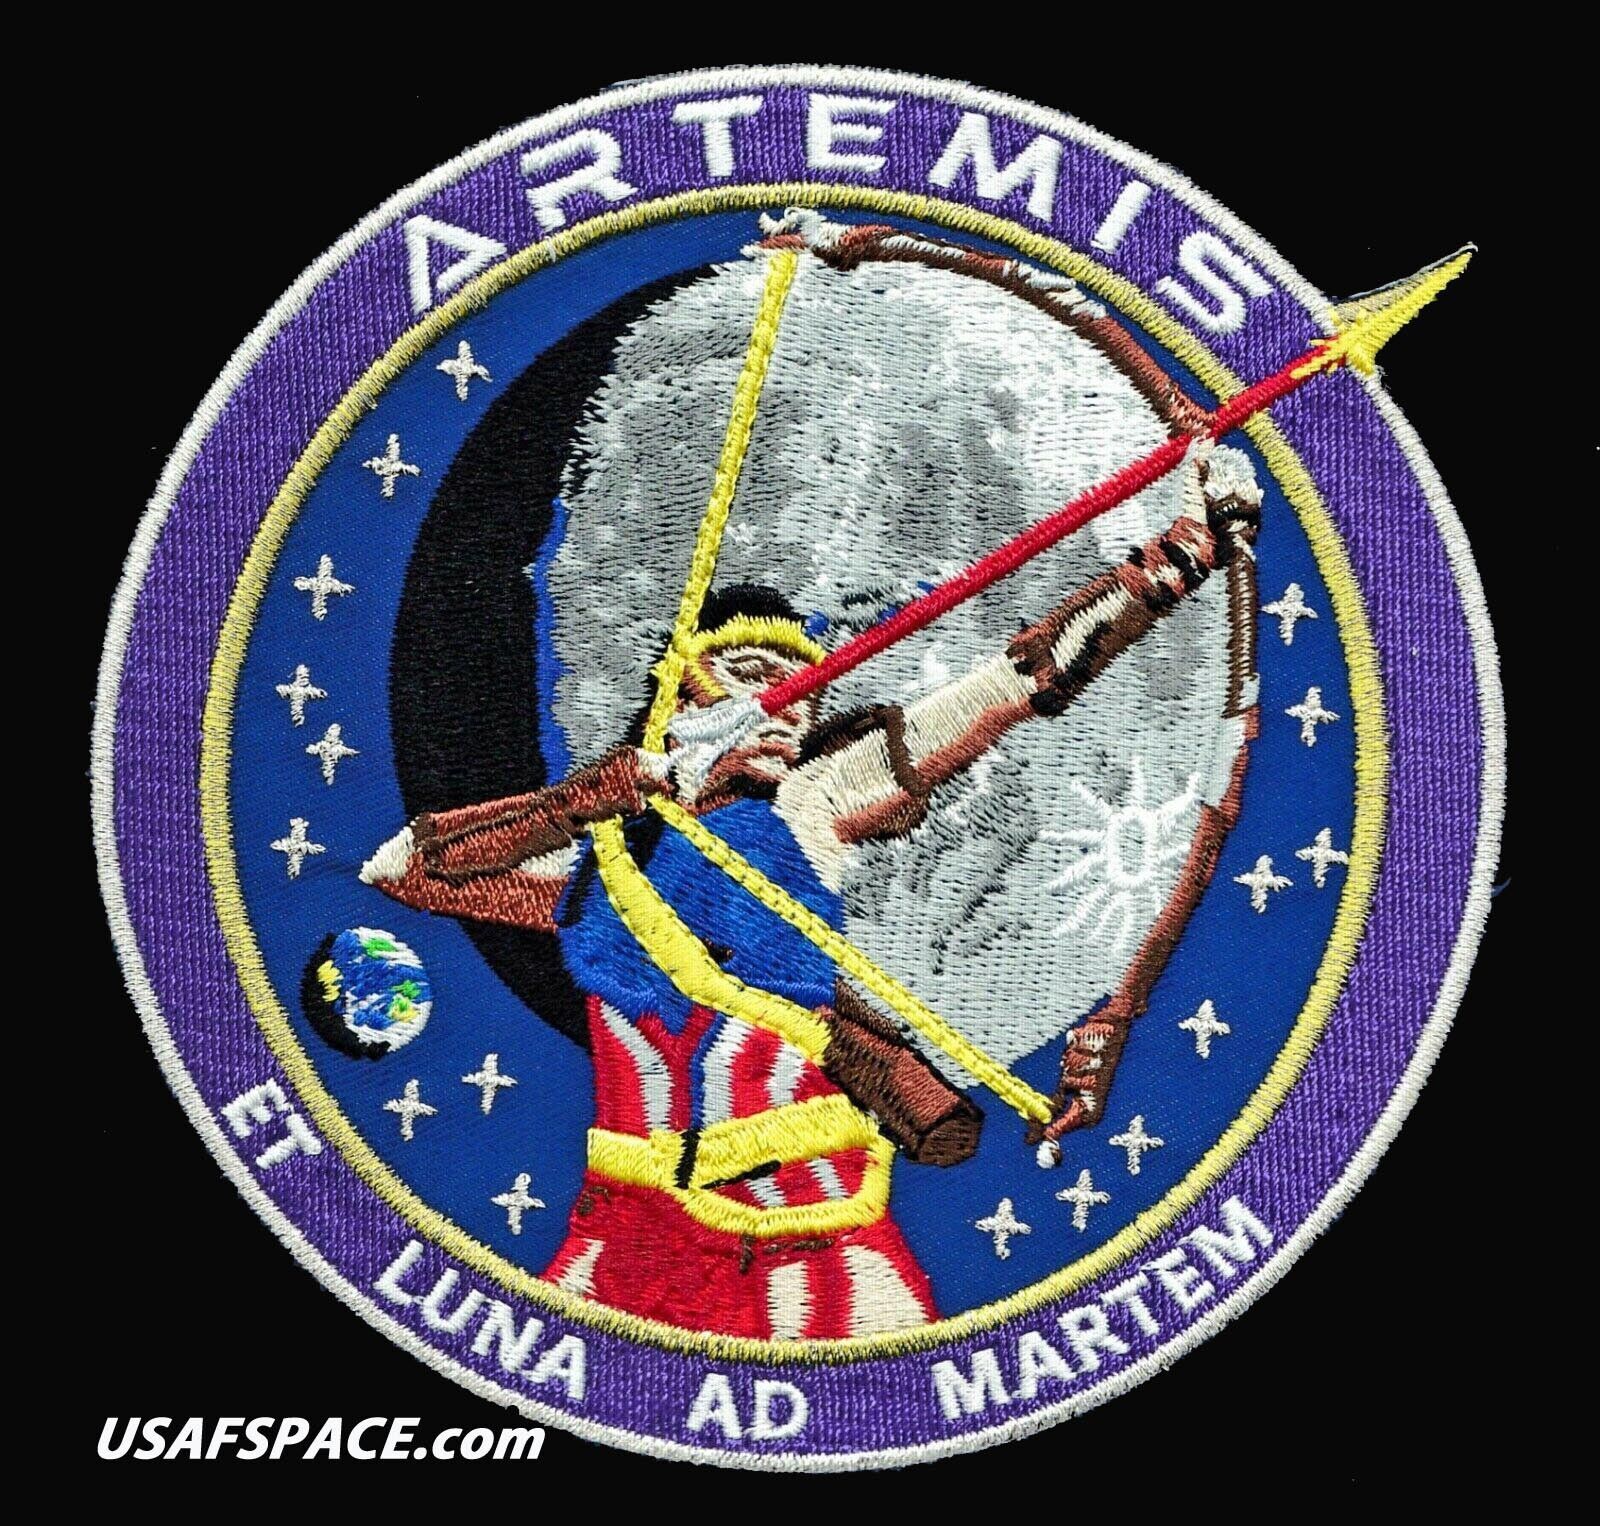 Authentic ARTEMIS-SLS- NASA-MOON-MARS PROGRAM- A-B Emblem 5